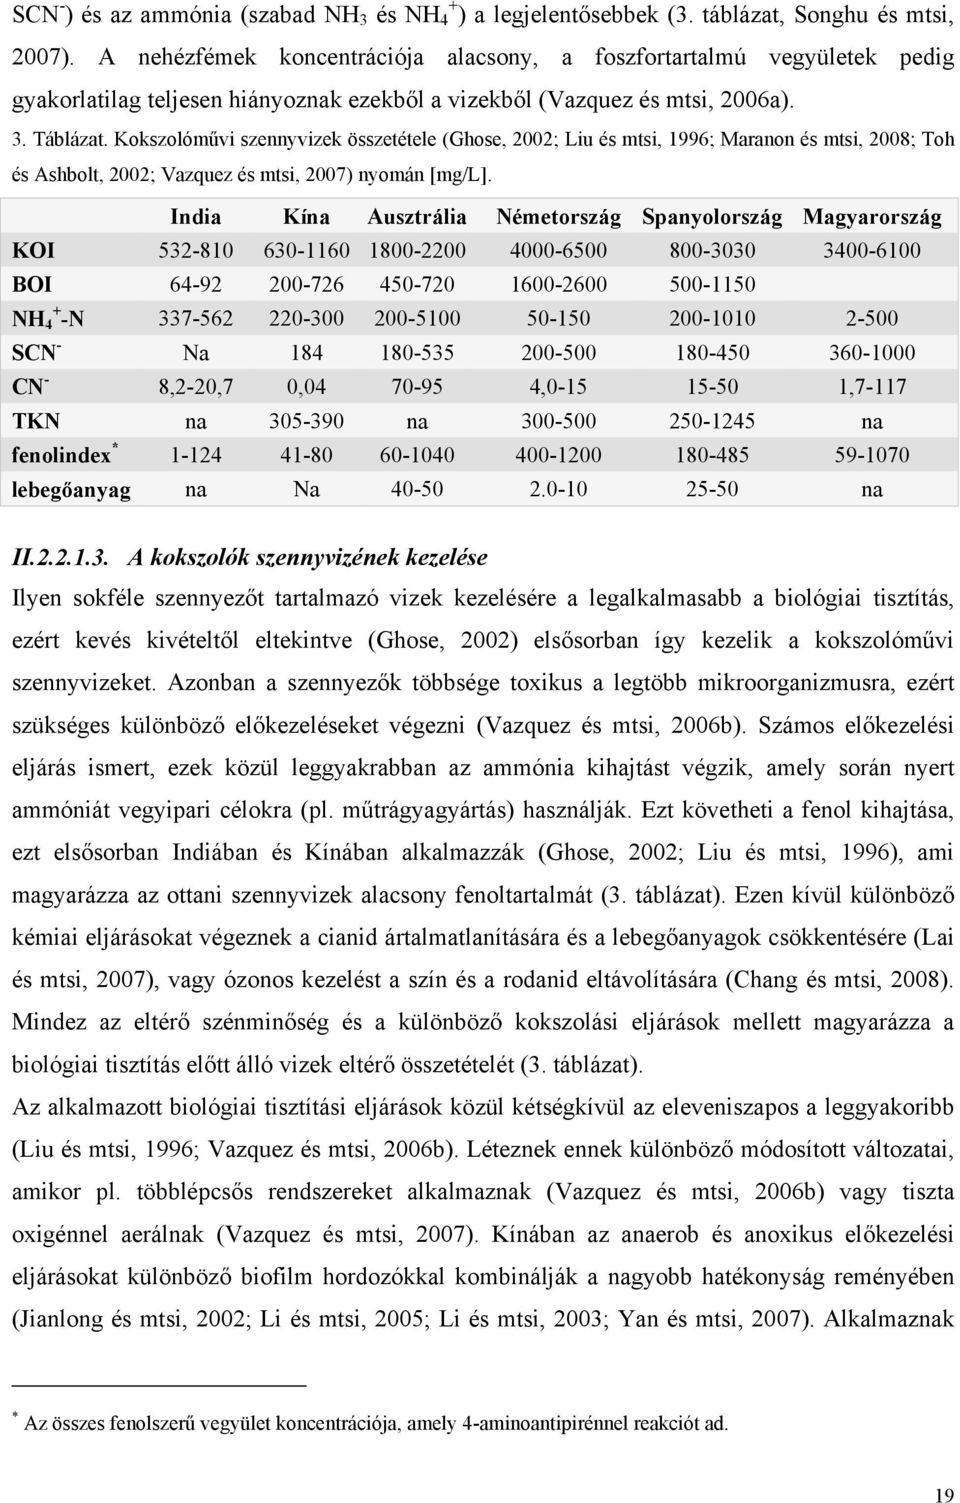 Kokszolóművi szennyvizek összetétele (Ghose, 2002; Liu és mtsi, 1996; Maranon és mtsi, 2008; Toh és Ashbolt, 2002; Vazquez és mtsi, 2007) nyomán [mg/l].